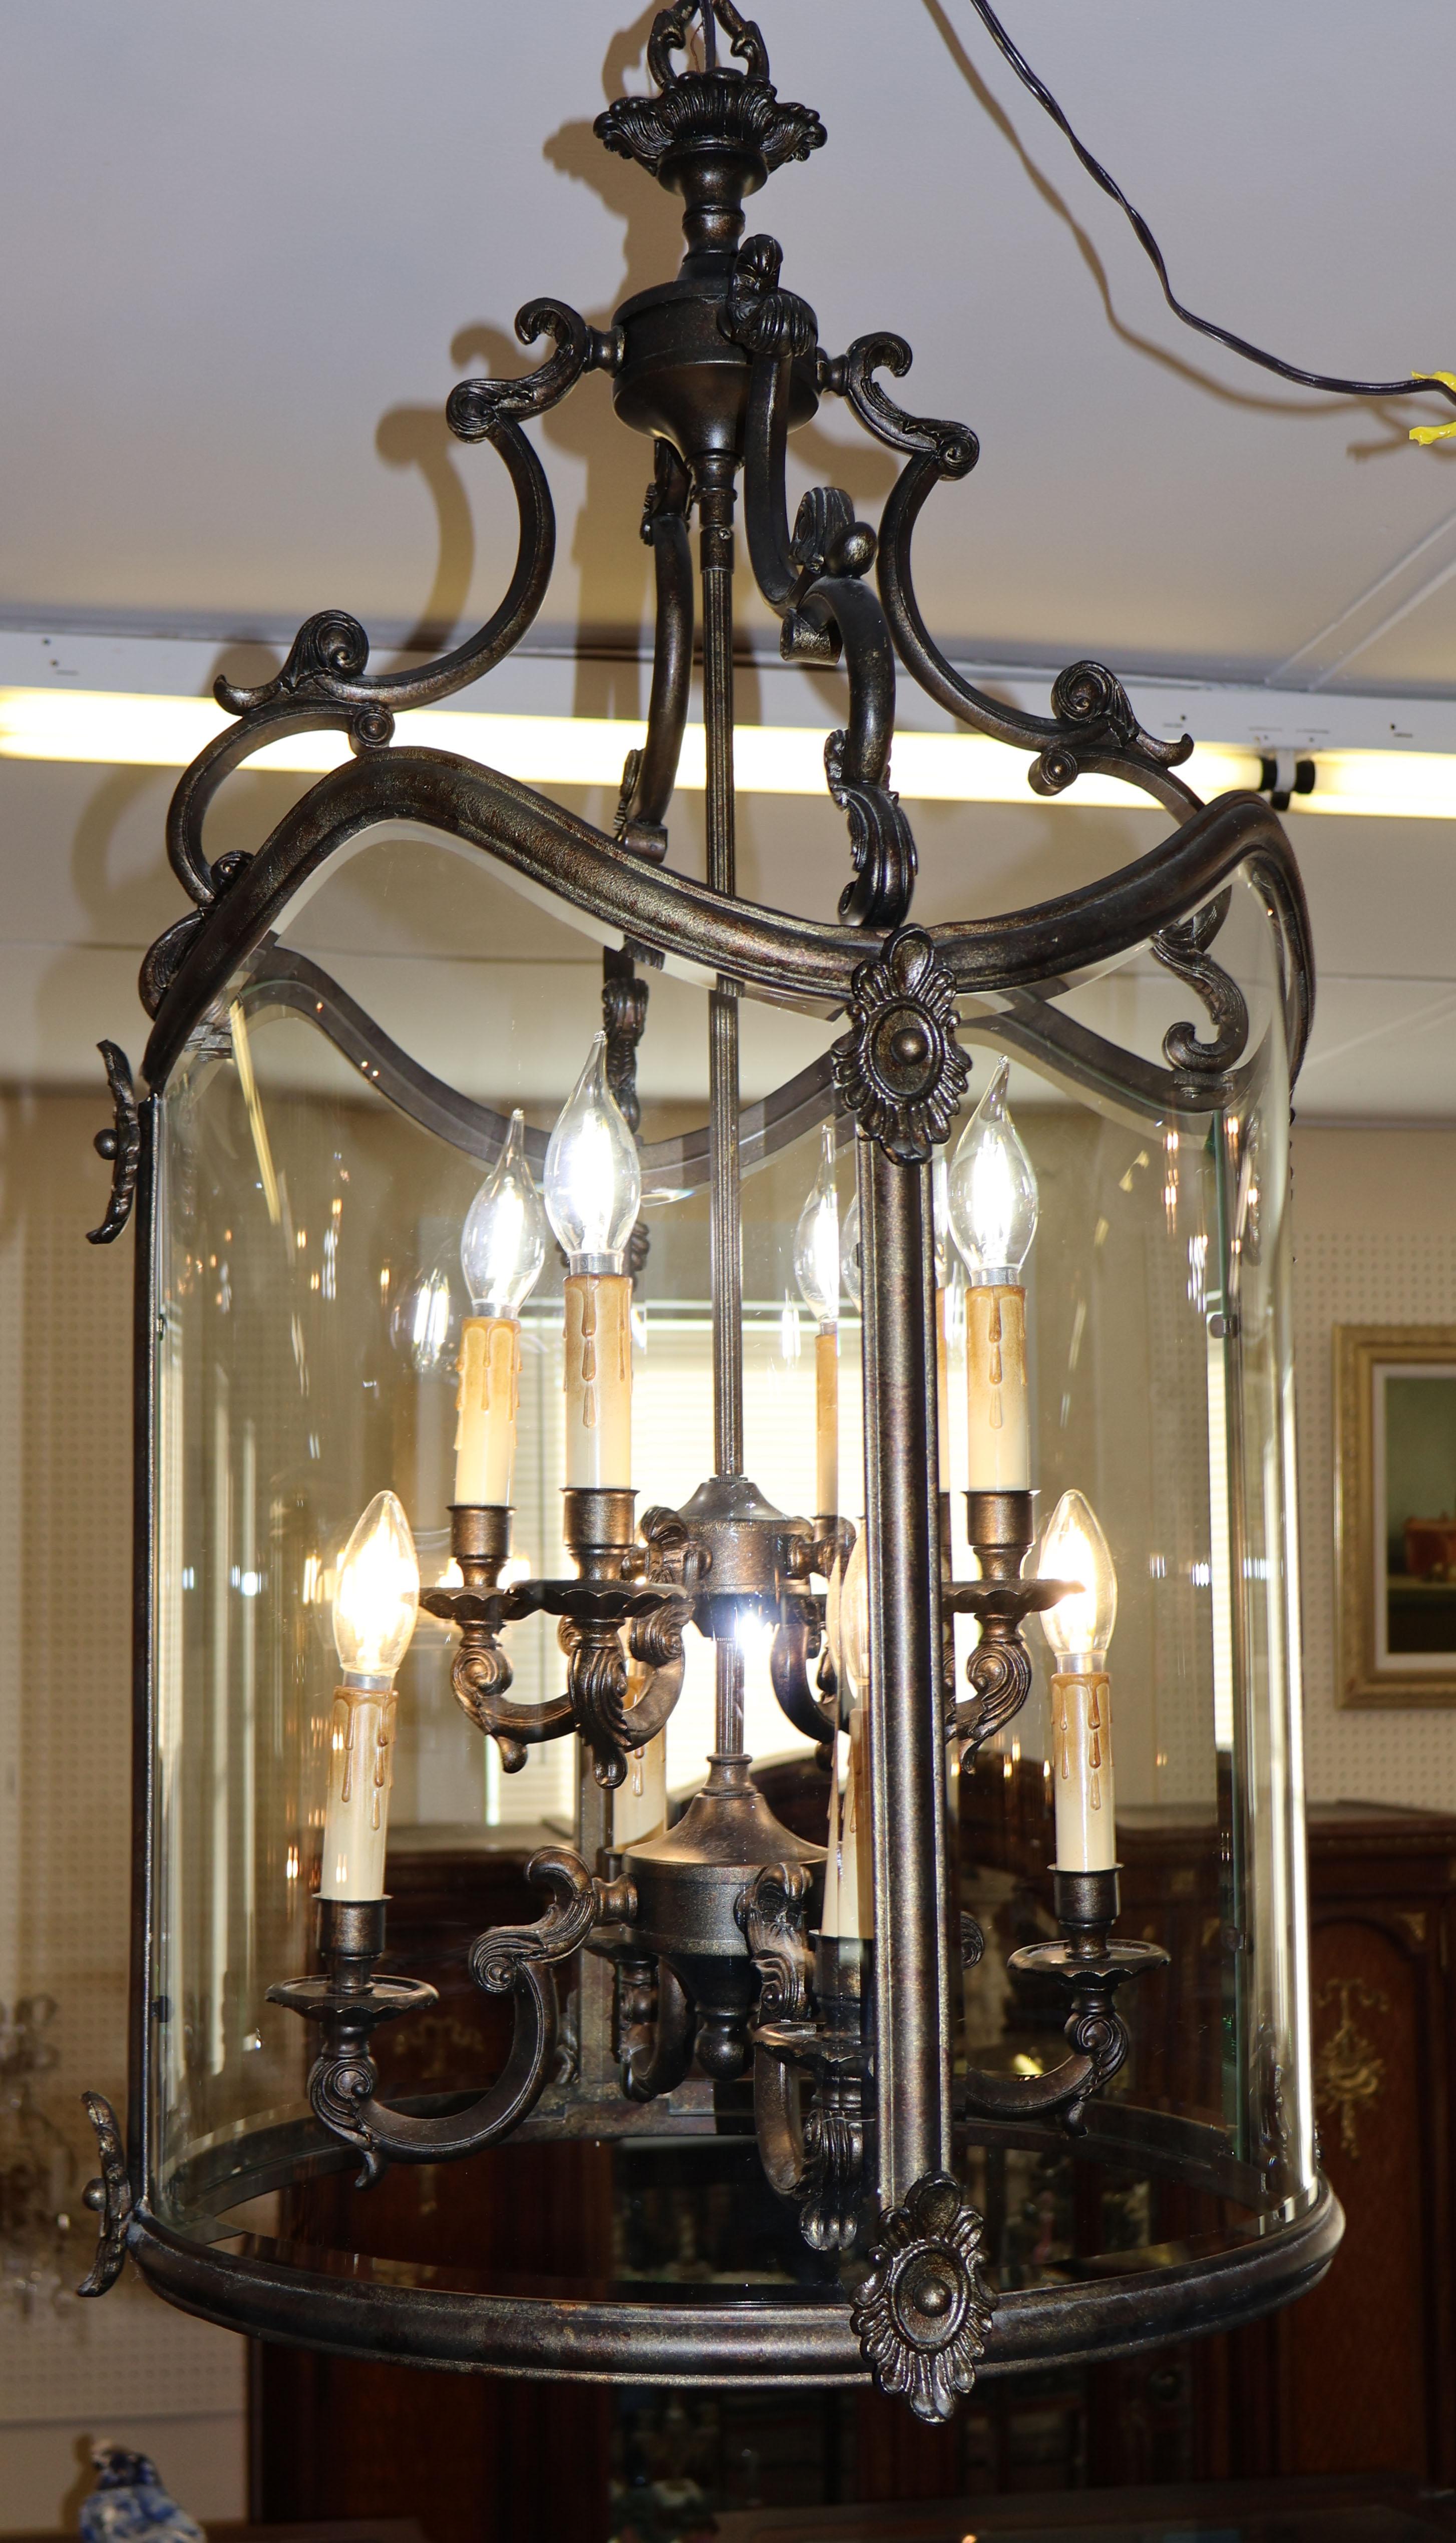 Lanterne de style Louis XVI à 8 lumières en bronze foncé

Dimensions : 32